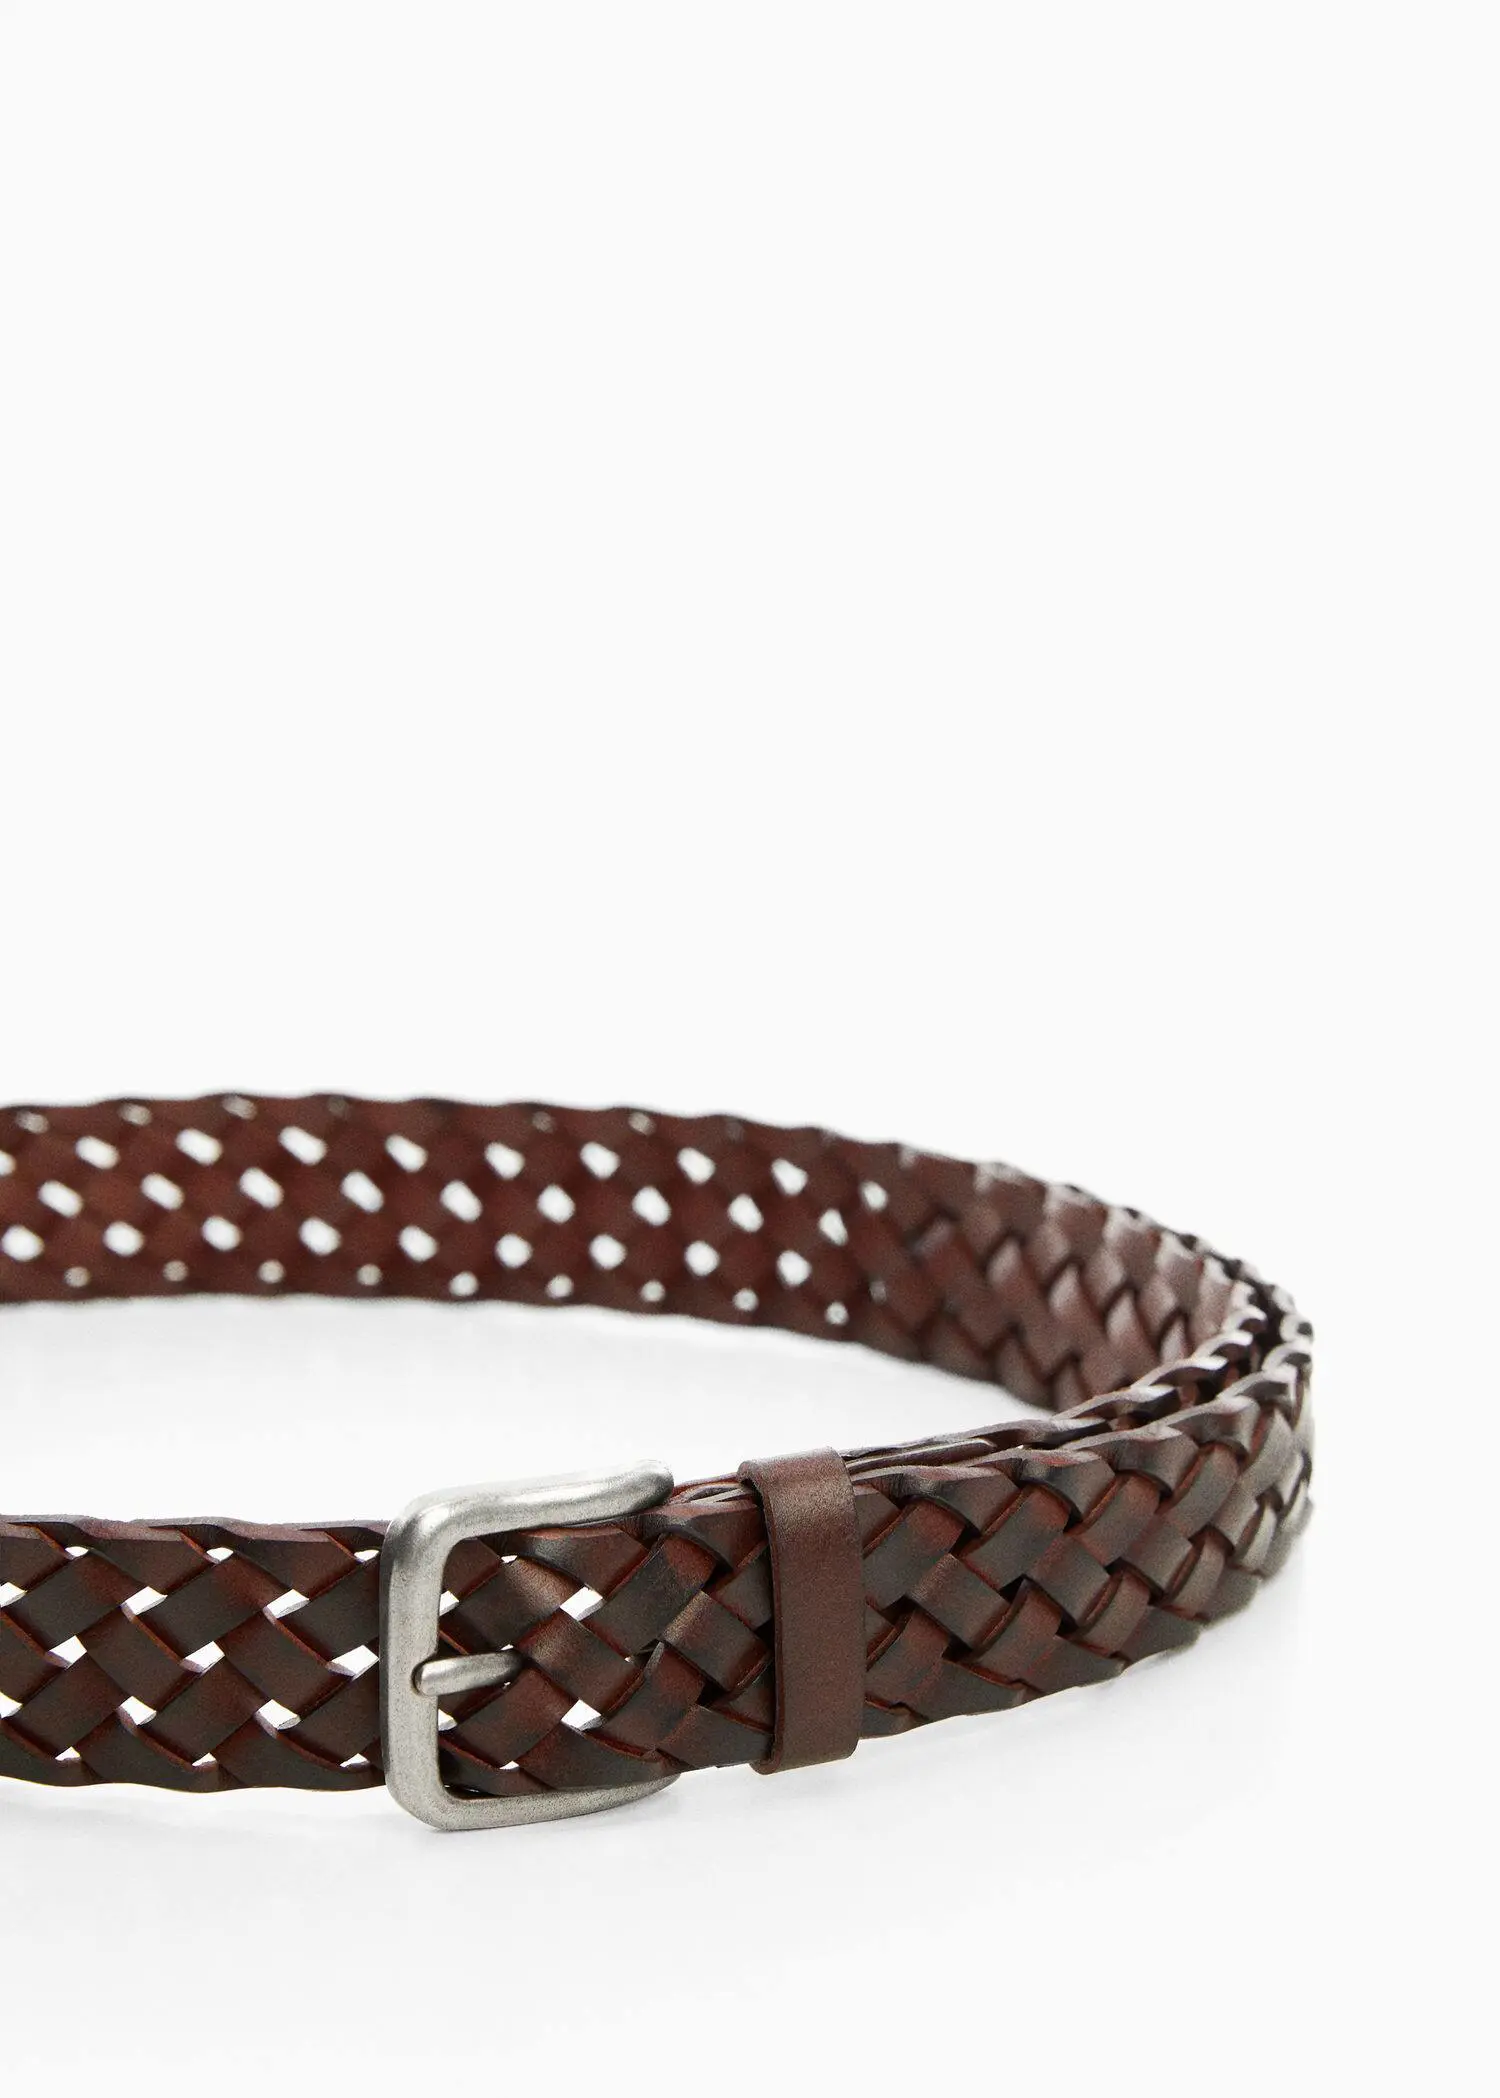 Mango Braided leather belt. 2